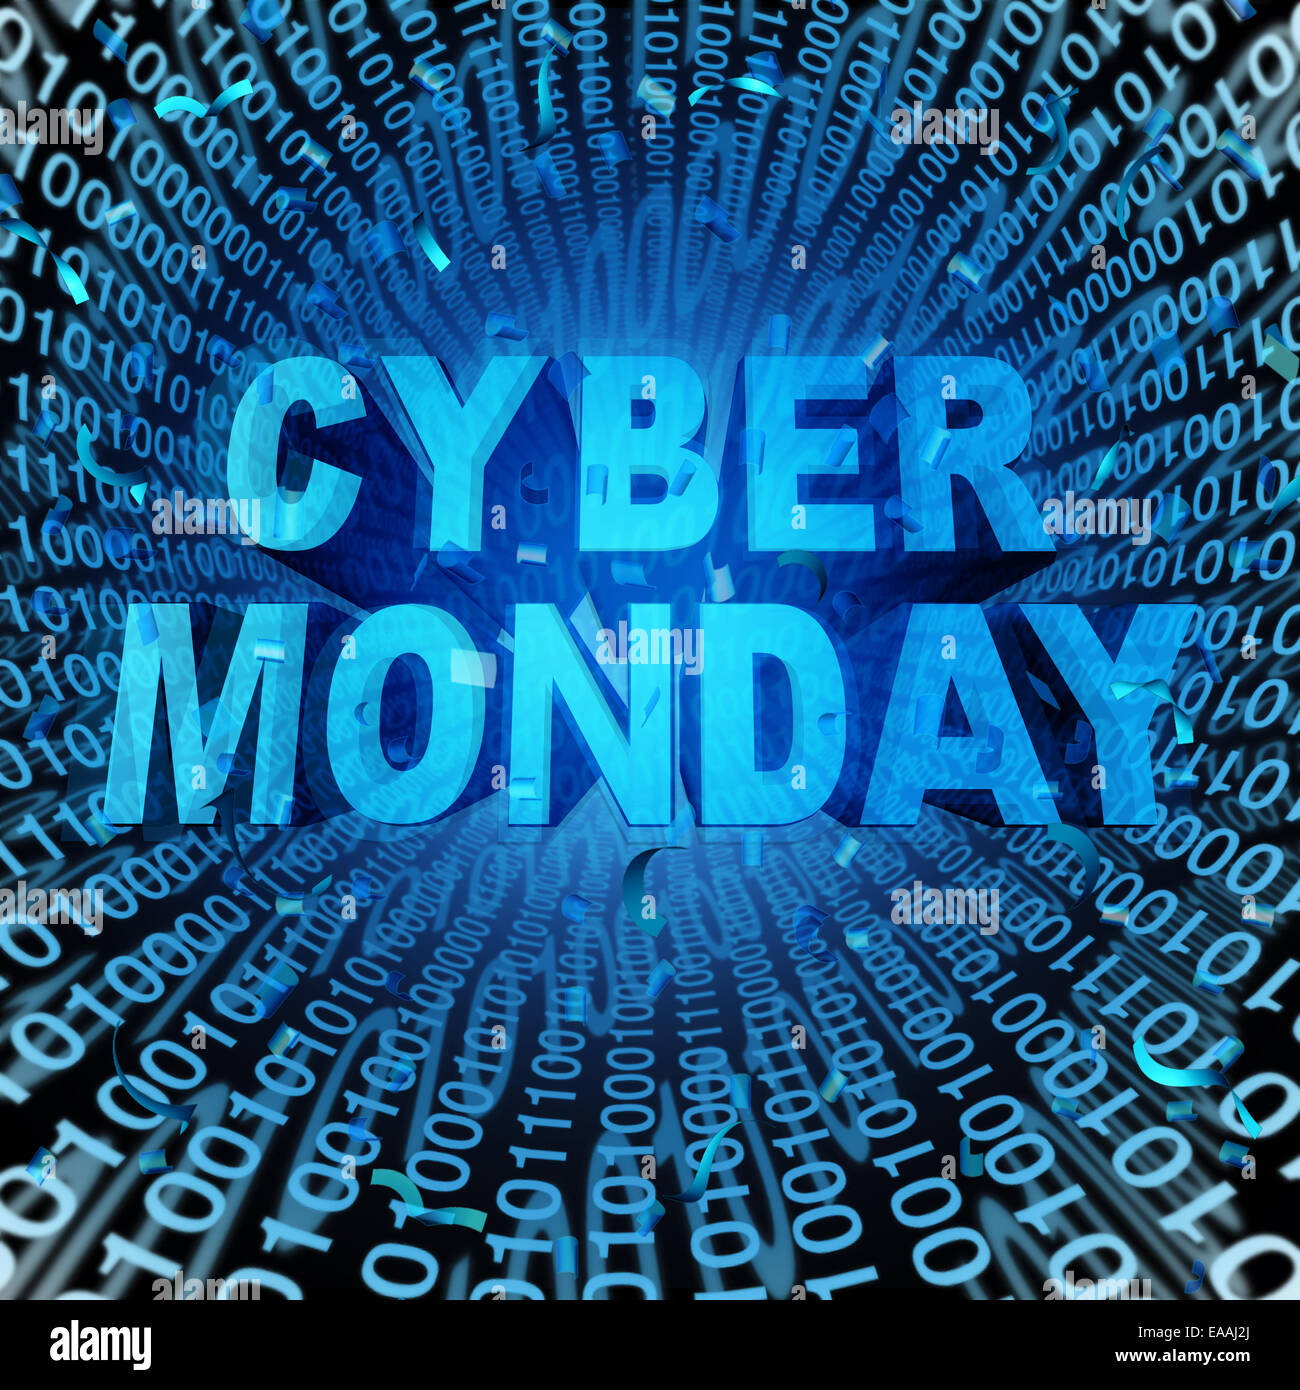 Vente Cyber Monday, symbole et concept de vente en ligne comme une célébration de l'internet pour des remises sur les produits des sites web. Banque D'Images